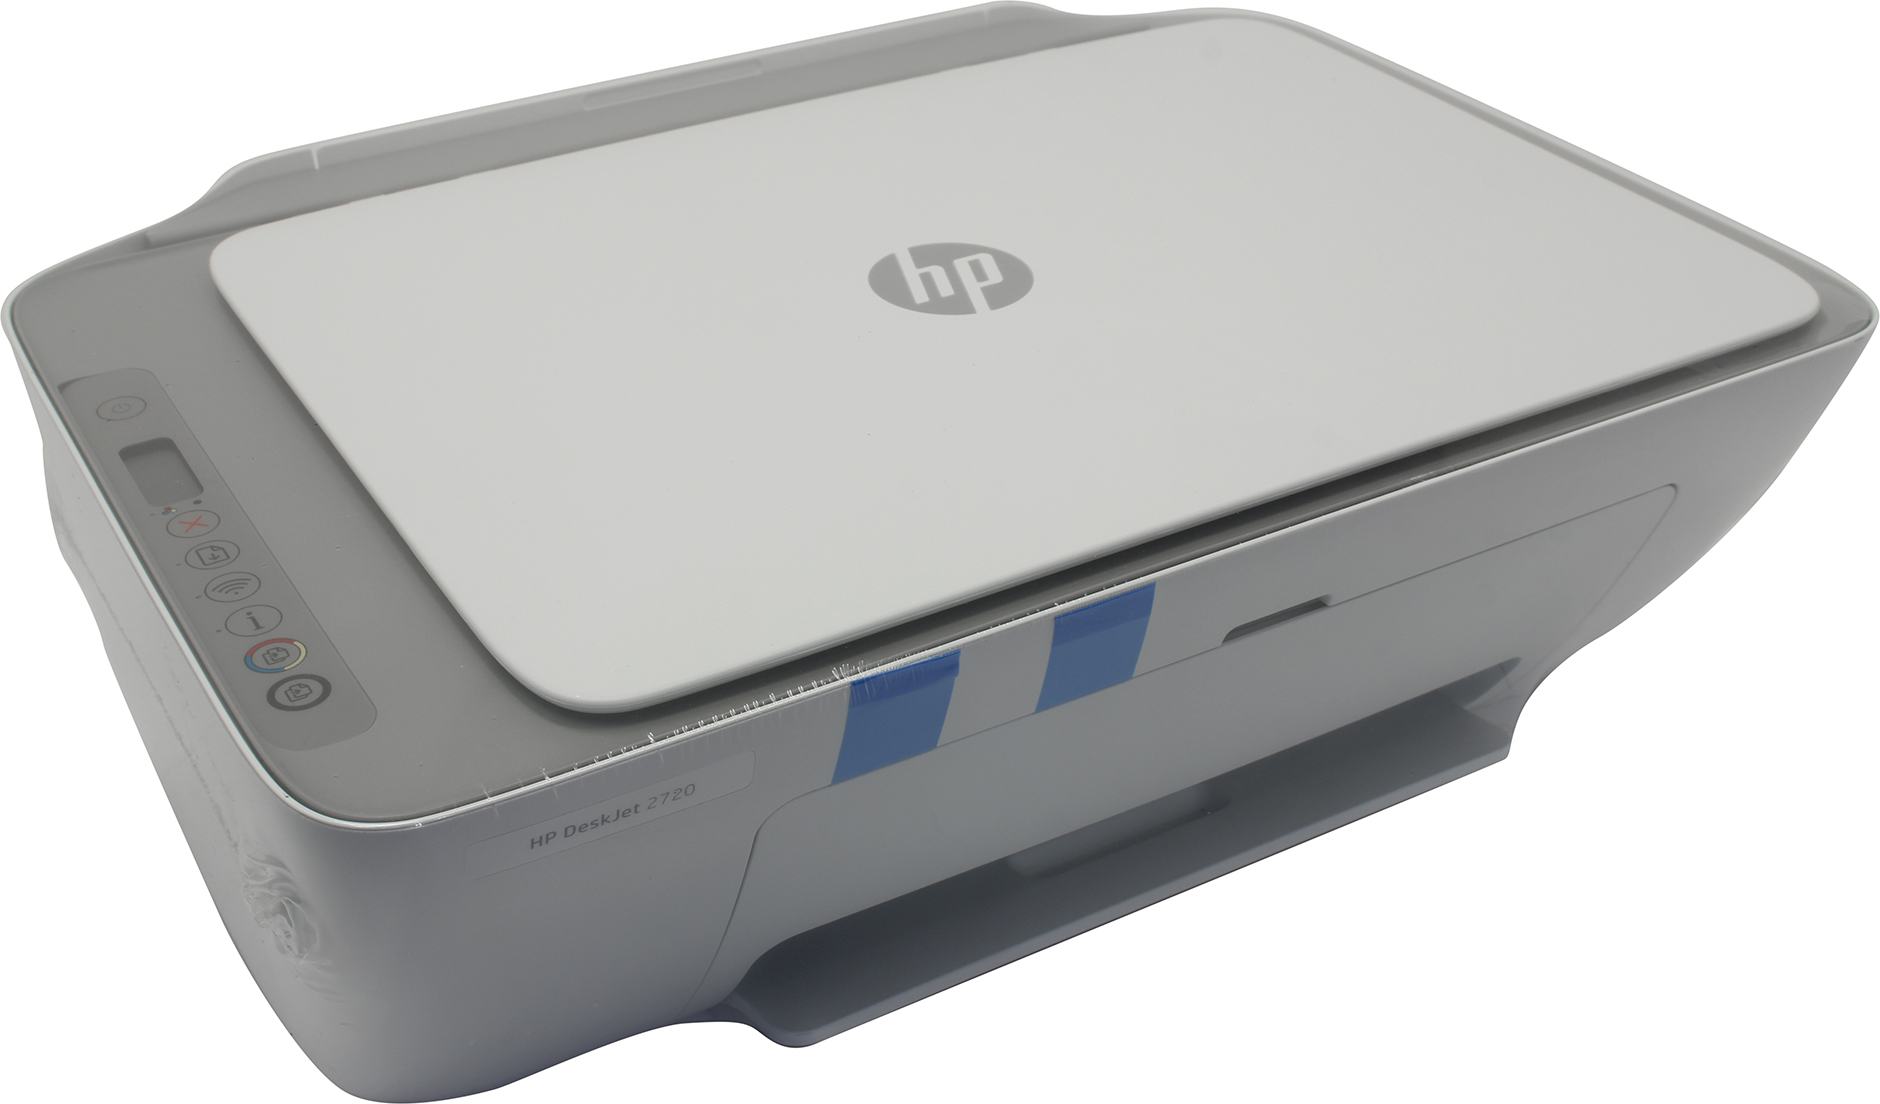 МФУ HP DeskJet 2720 A4 струйный принтер, сканер, копир  (3XV18B)